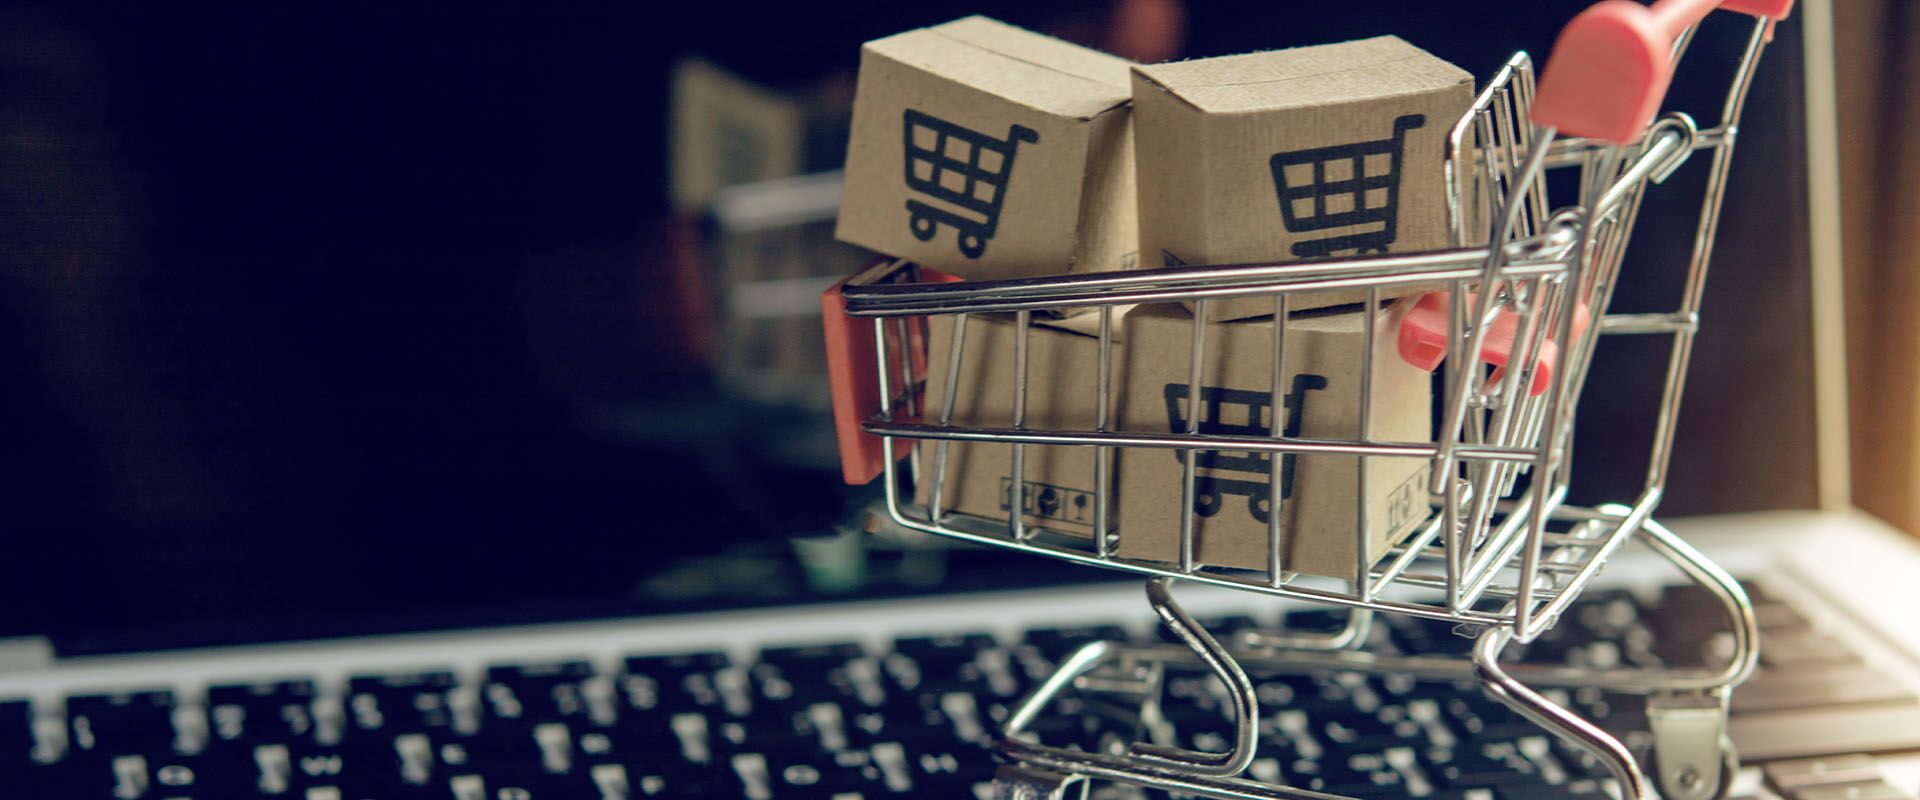 Bild mit kleinem Einkaufwagen vor Computer drauf zum Thema Onlineshopping